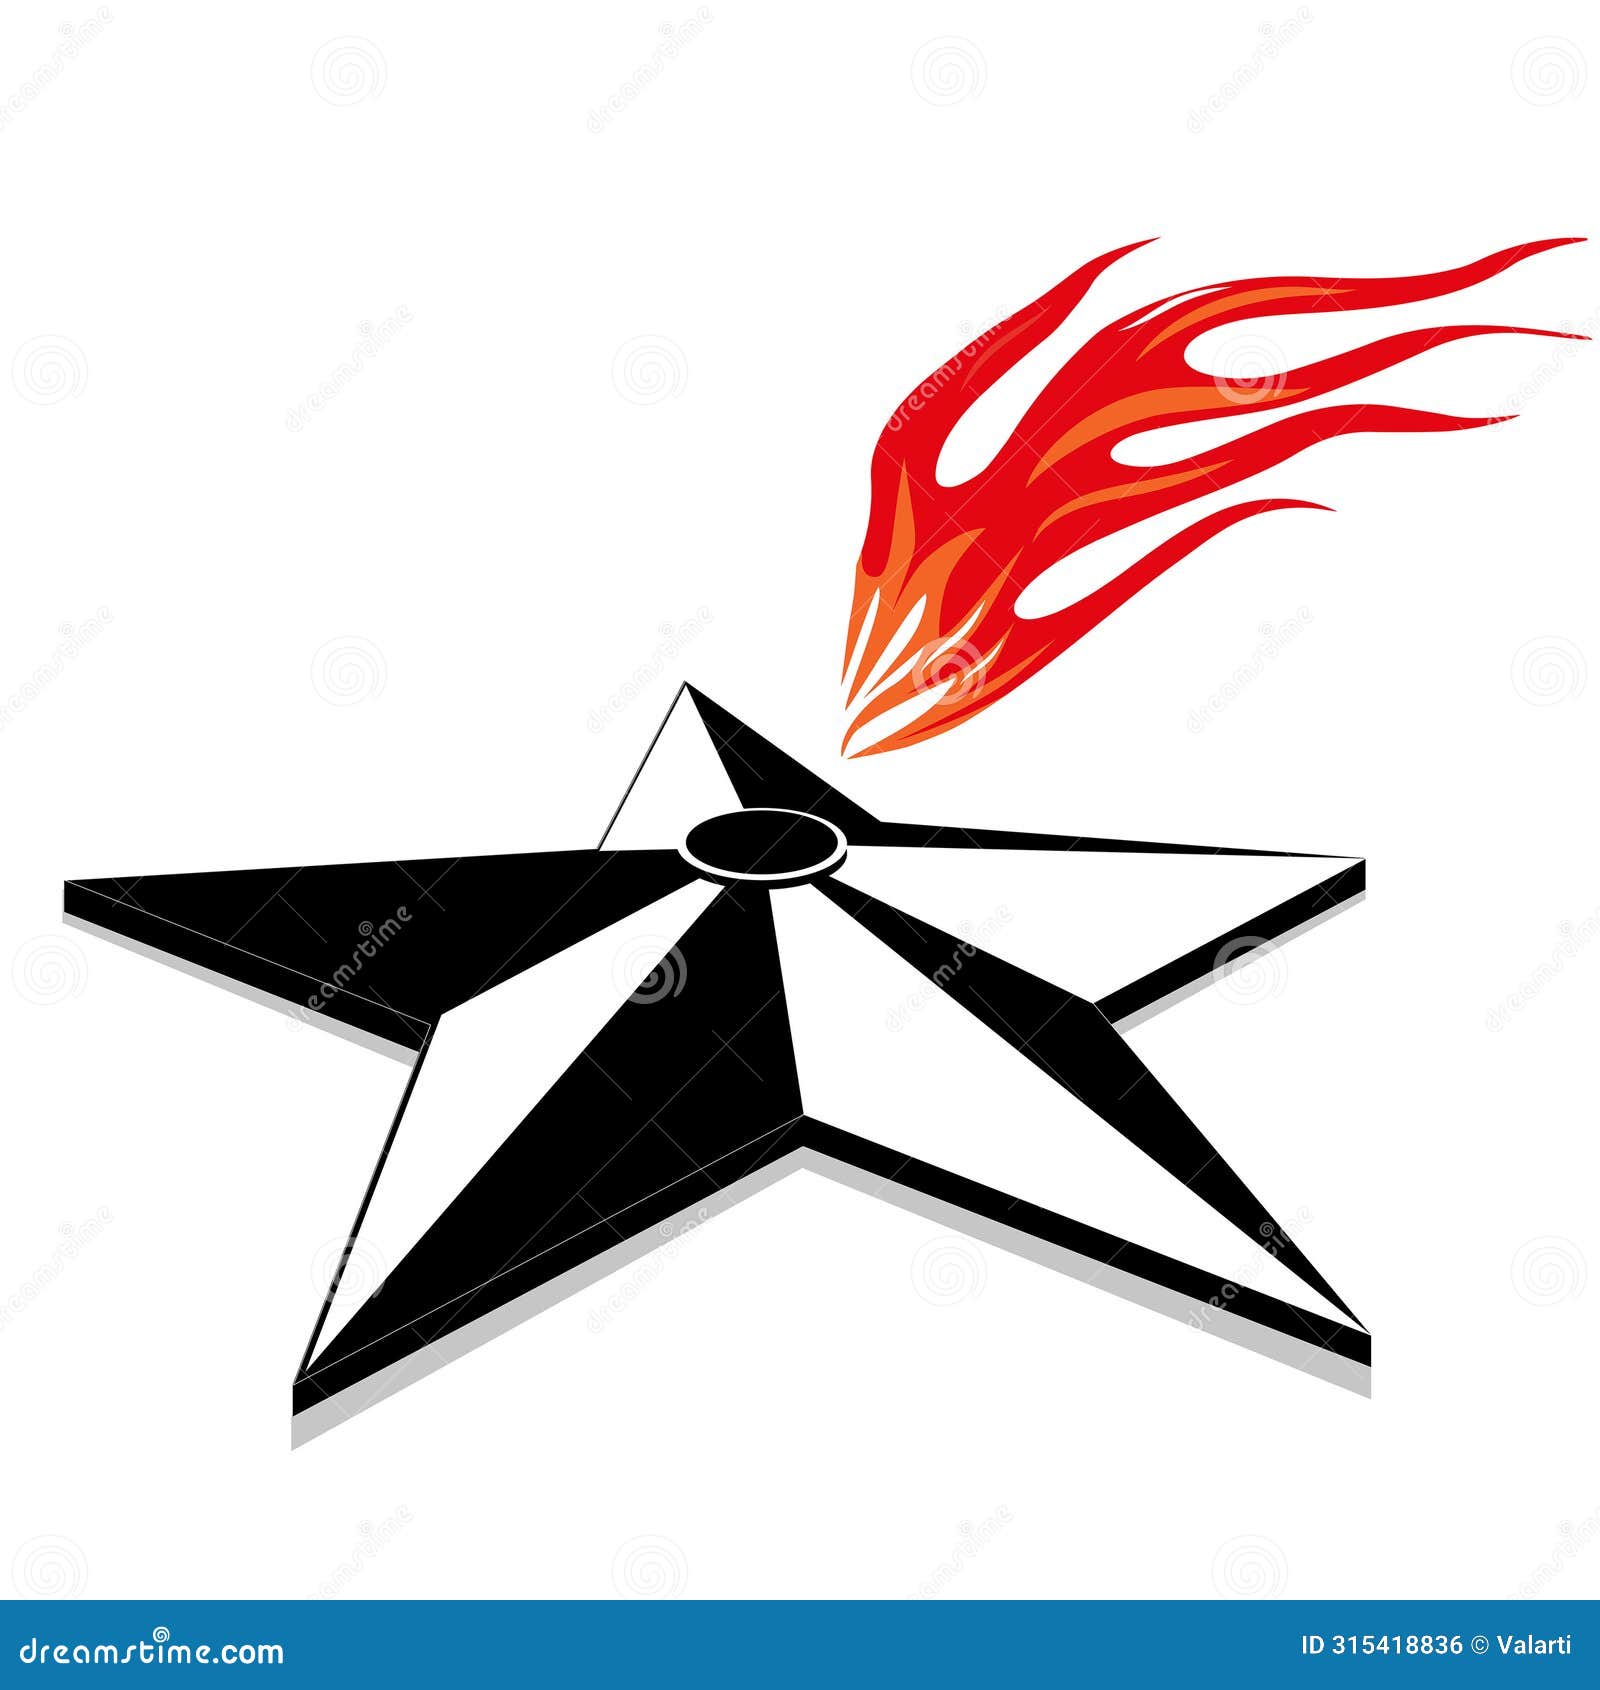 memorial 9 may eternal flame  in great patriotic war star flame fire logo 